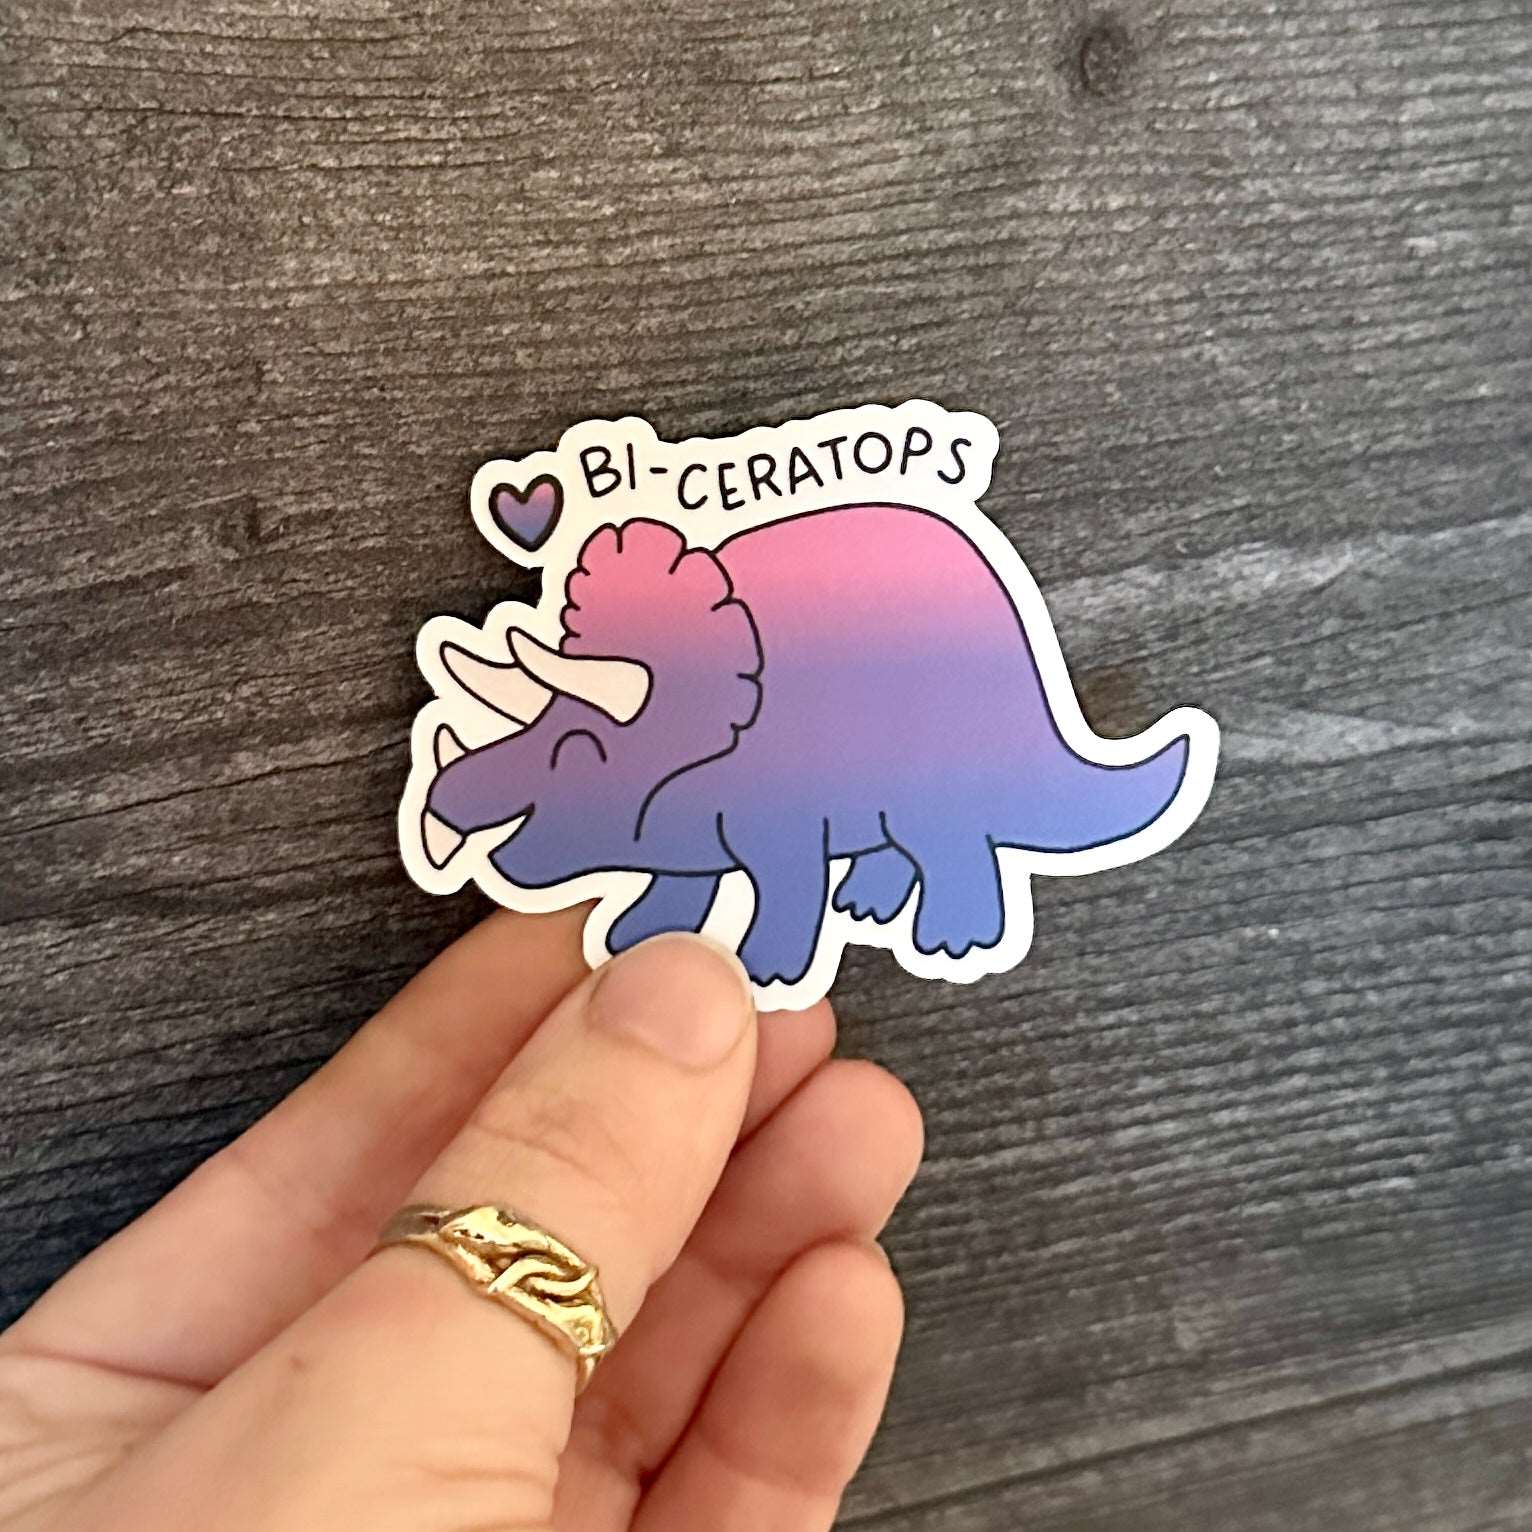 Bi-ceratops | Pride Dinosaur Sticker